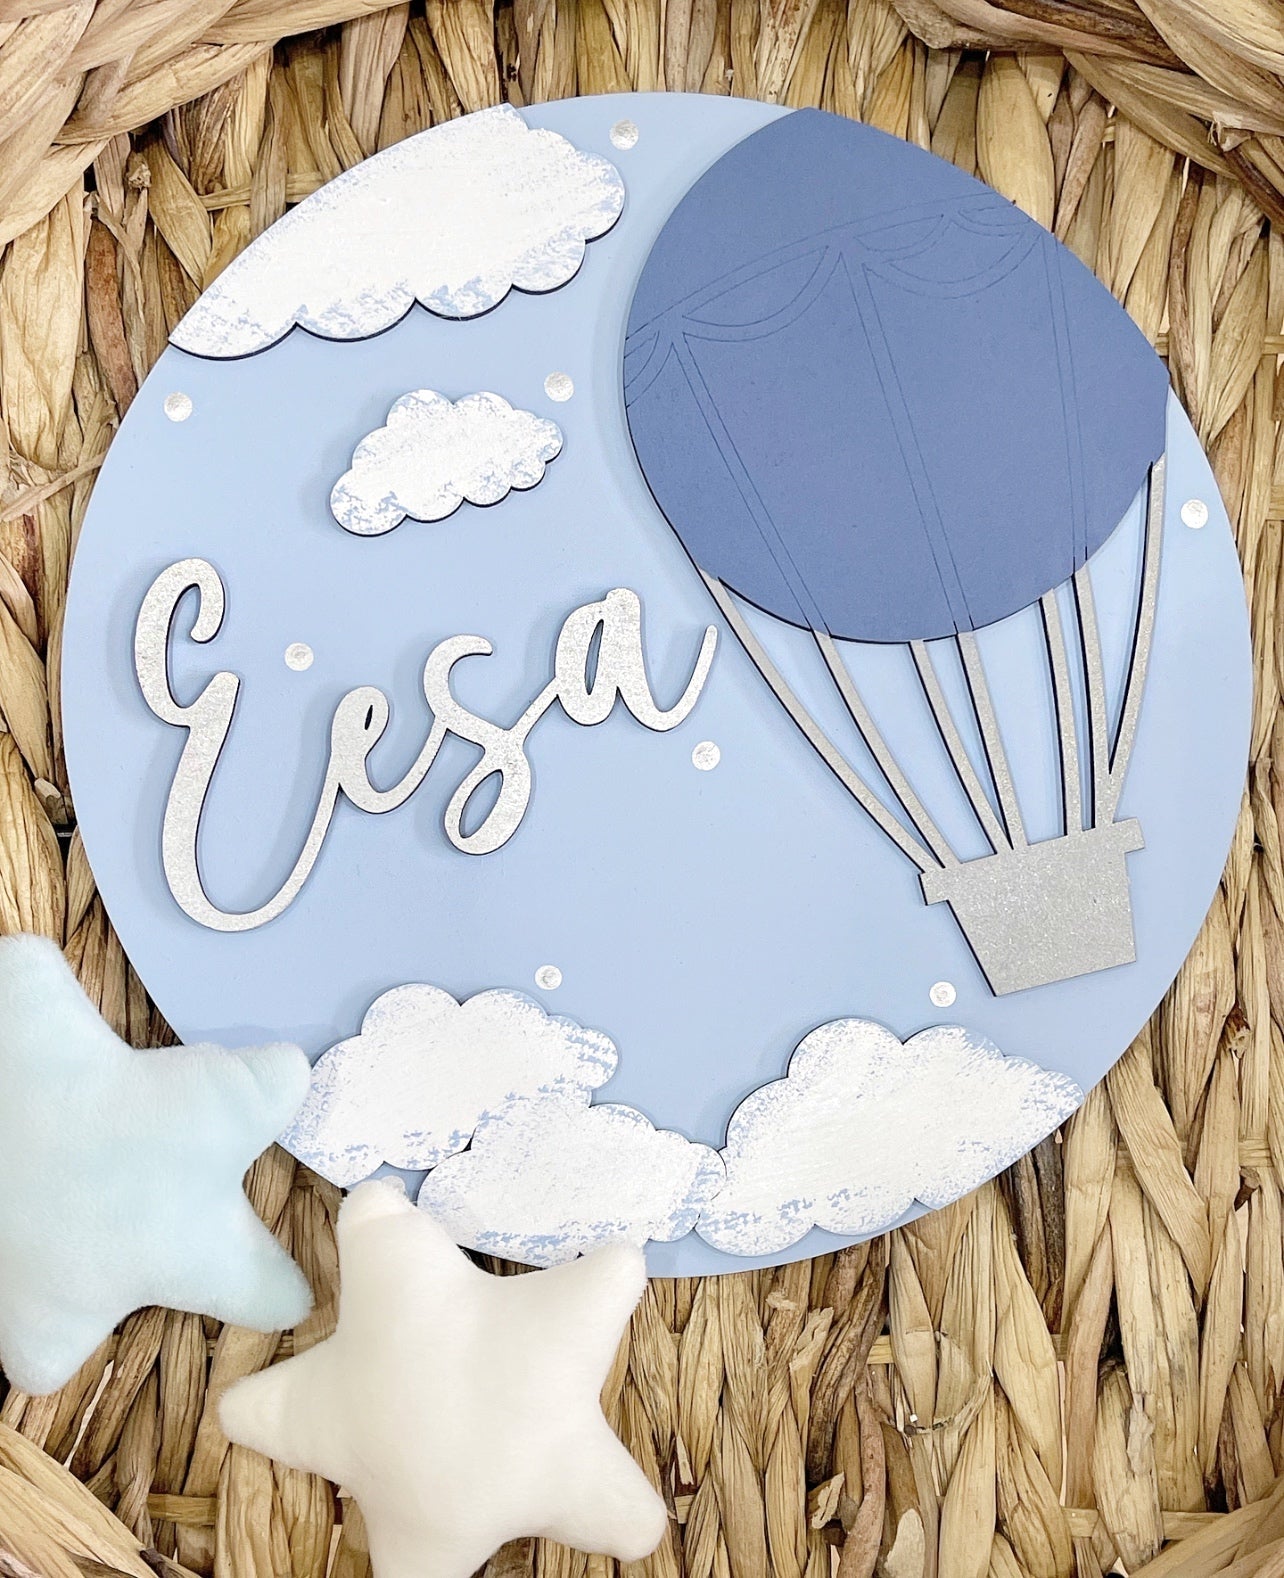 Hot Air Balloon Plaque - Cute as a Button by Laura